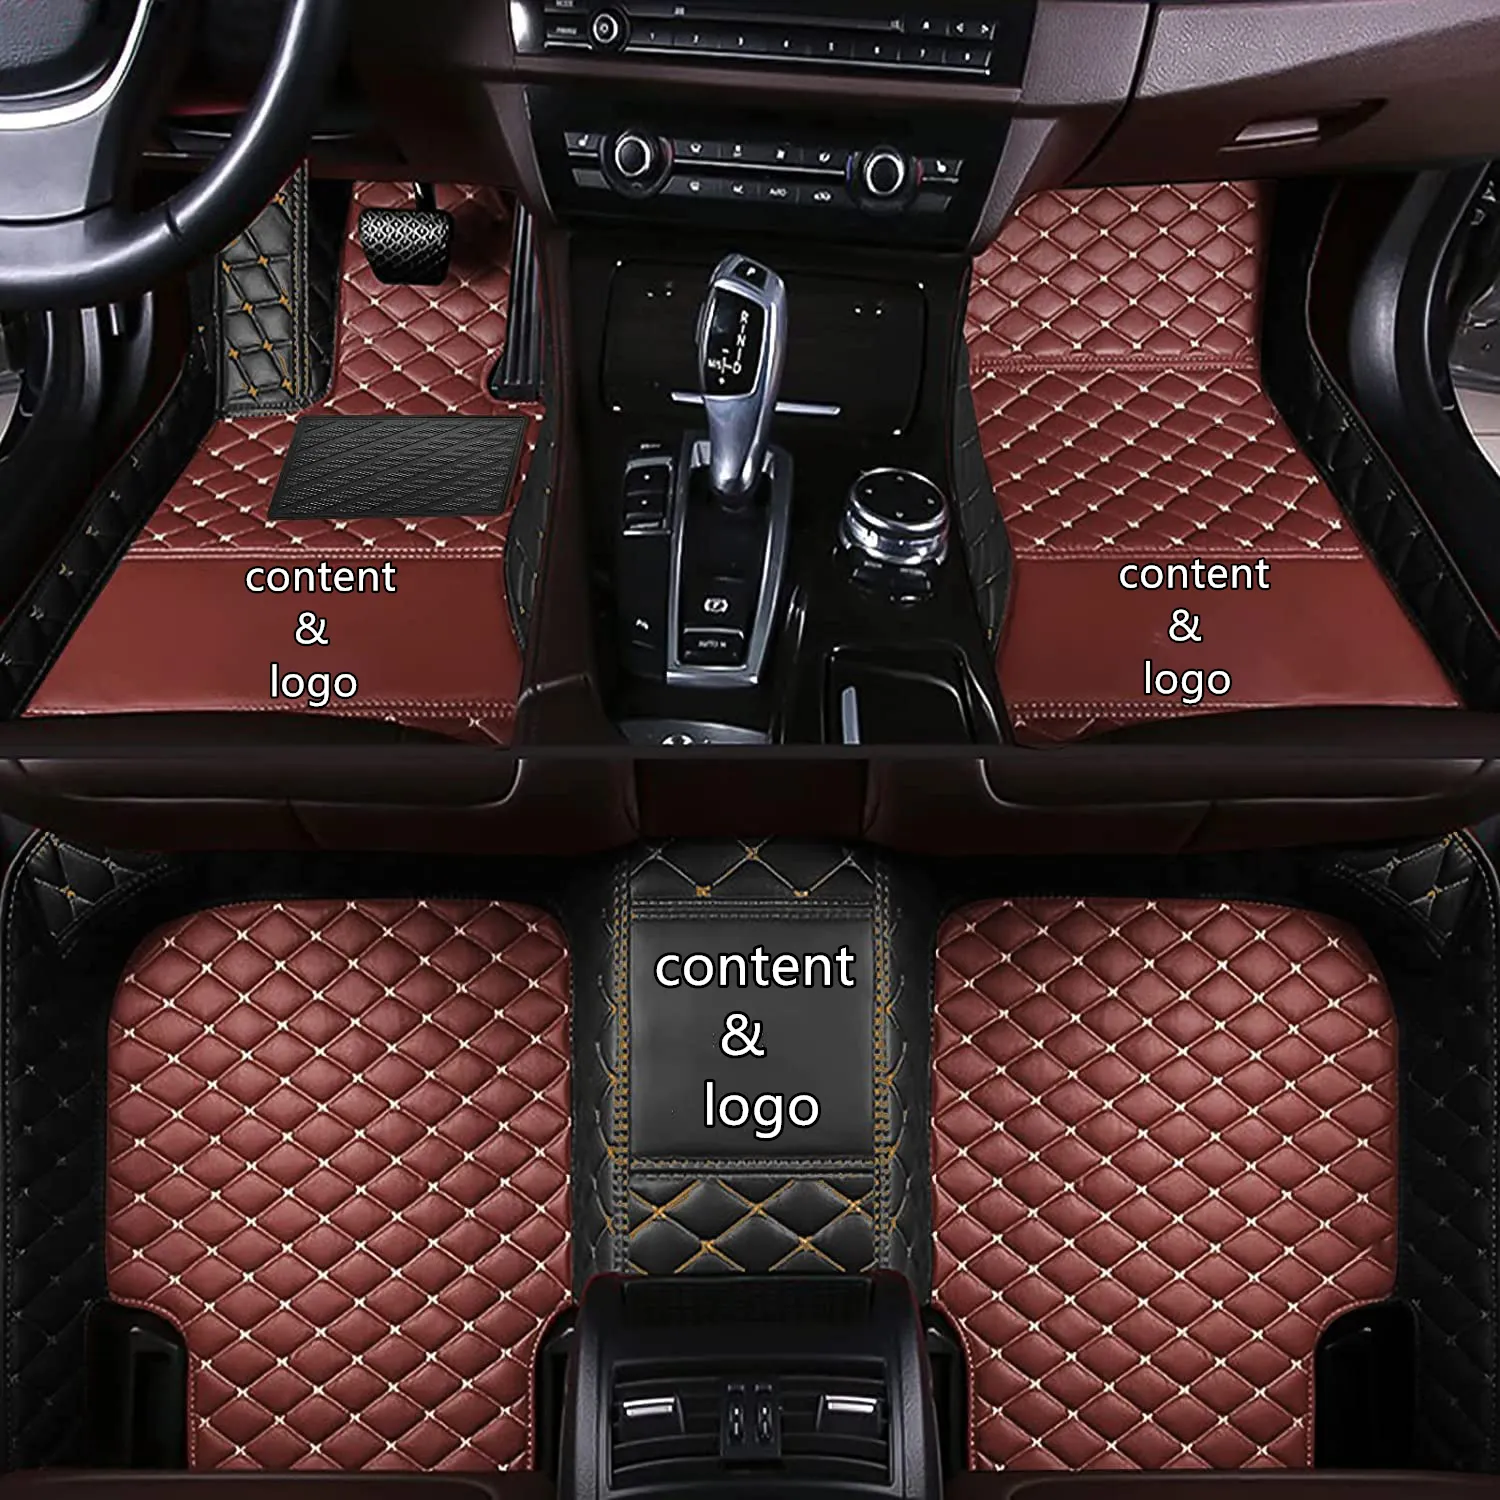 Lexus GS 2010 2009 2008 방수 카펫 맞춤형 자동차 액세서리 인테리어 부품 교체 제품에 적합한 자동차 바닥 매트에 적합합니다.